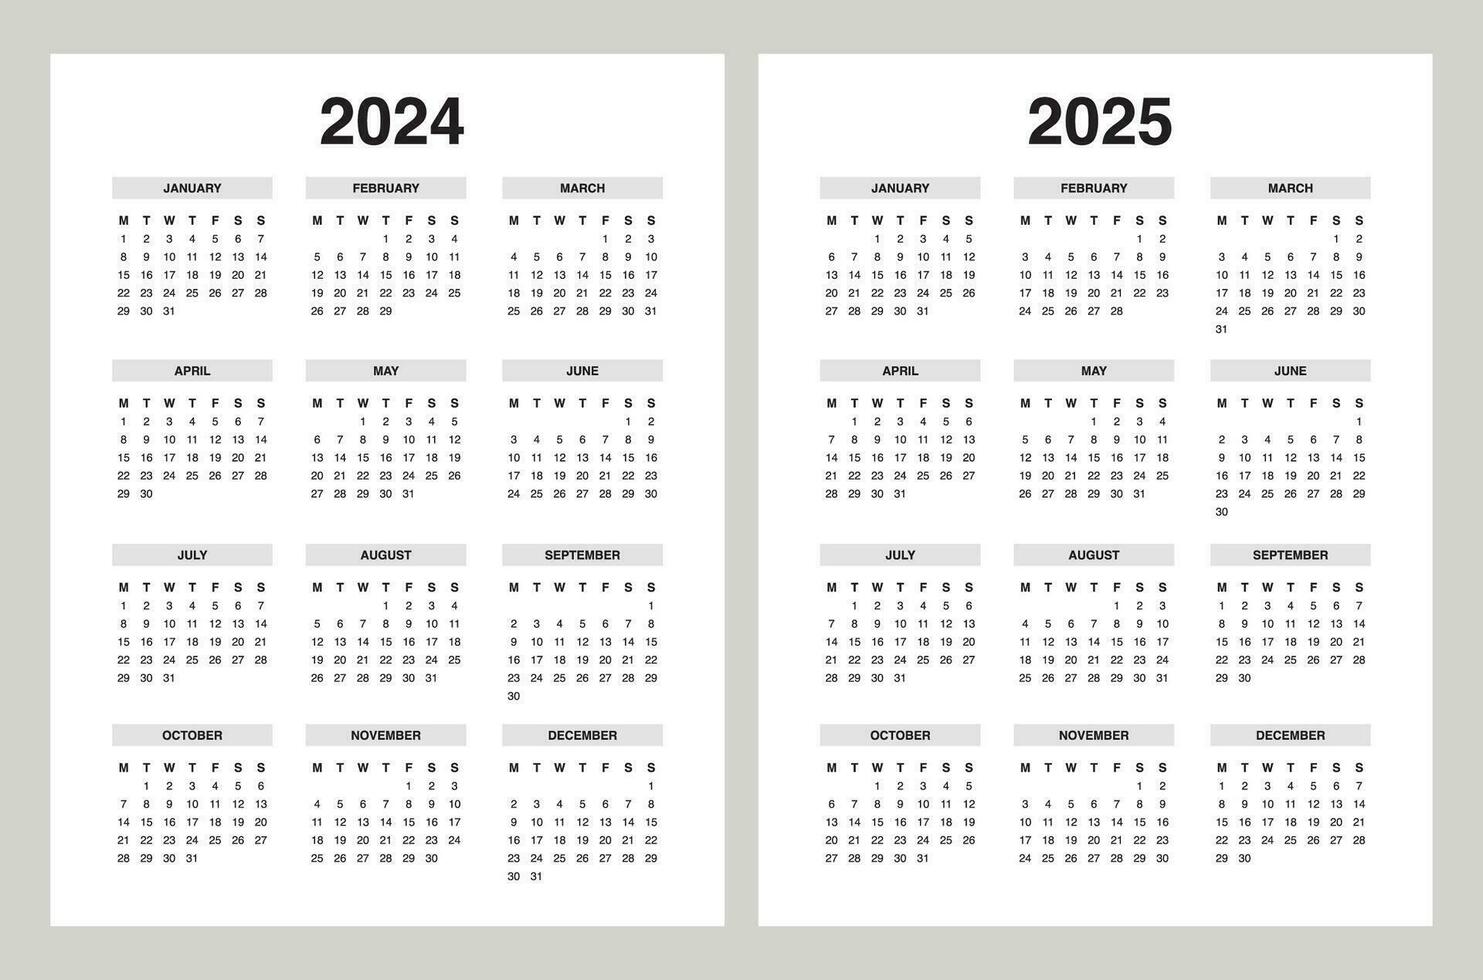 Facile calendrier 2024, calendrier 2025 la semaine début Lundi vecteur